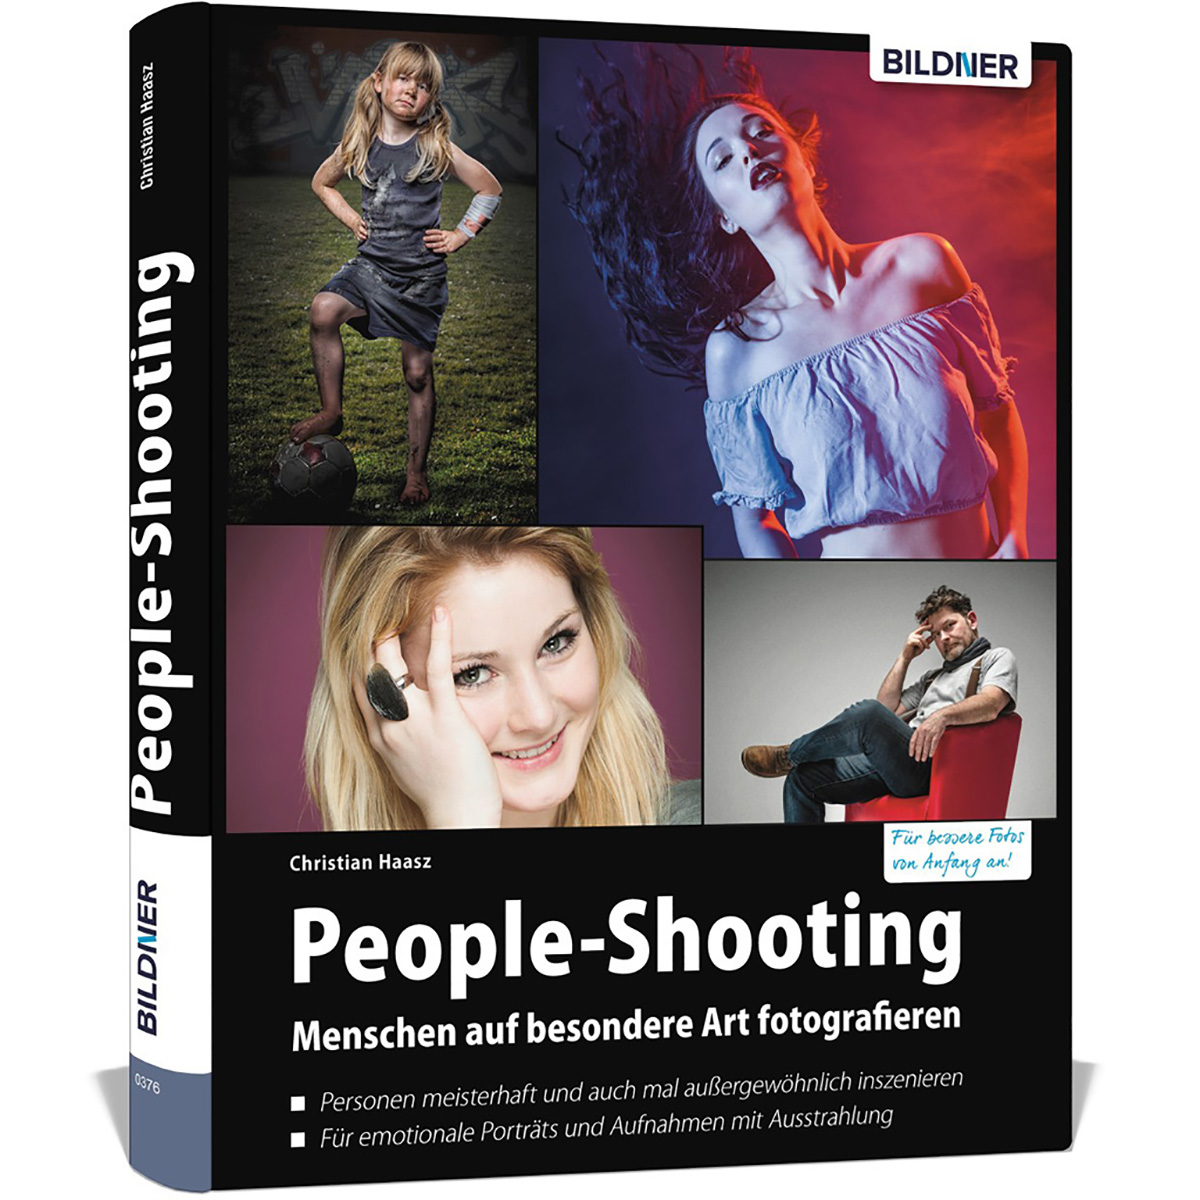 People-Shooting - auf fotografieren besondere Menschen Art